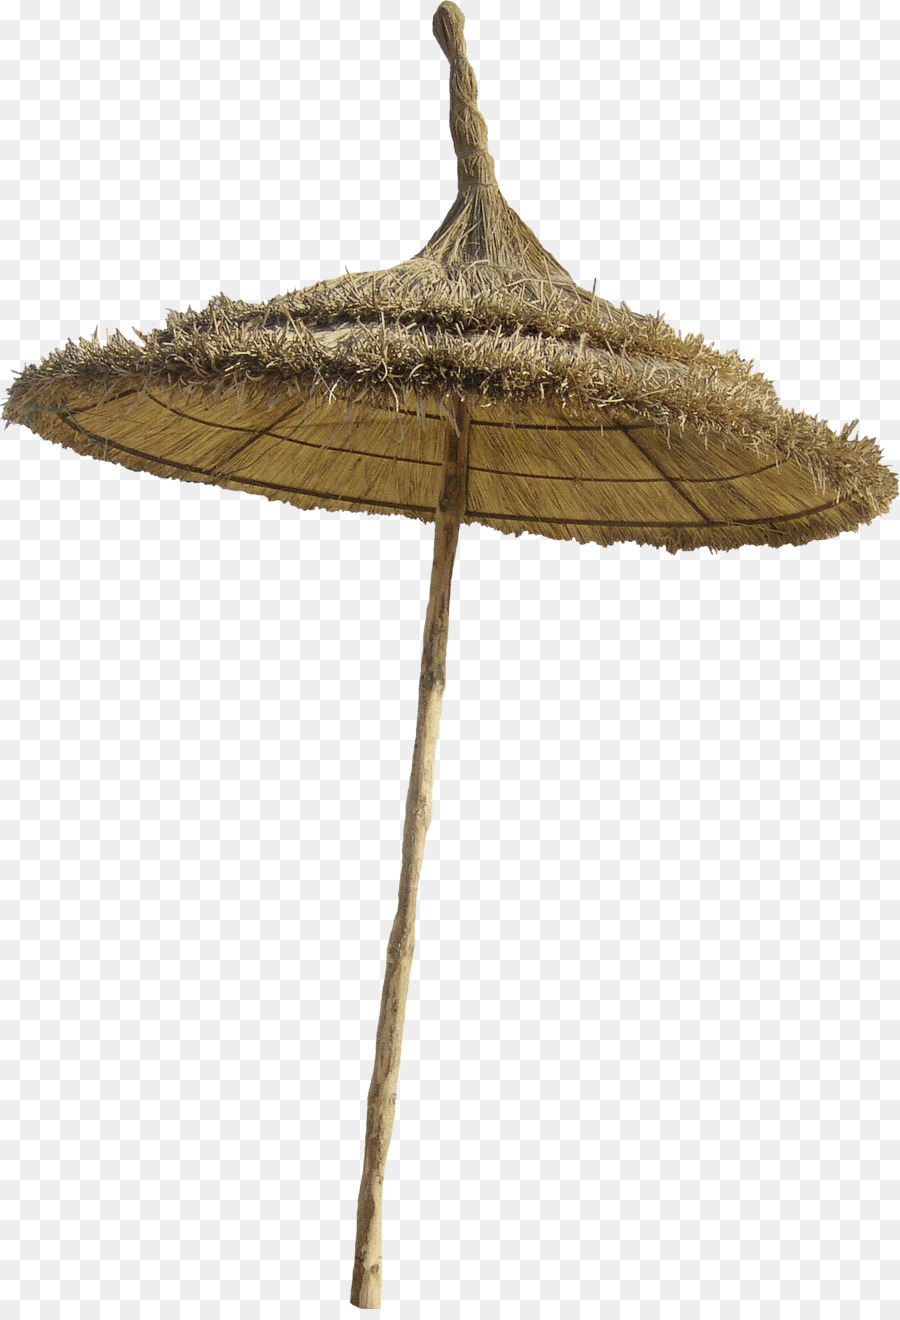 Umbrella Beach - Grass beach umbrellas png download - 1700*2473 - Free Transparent Umbrella png Download.